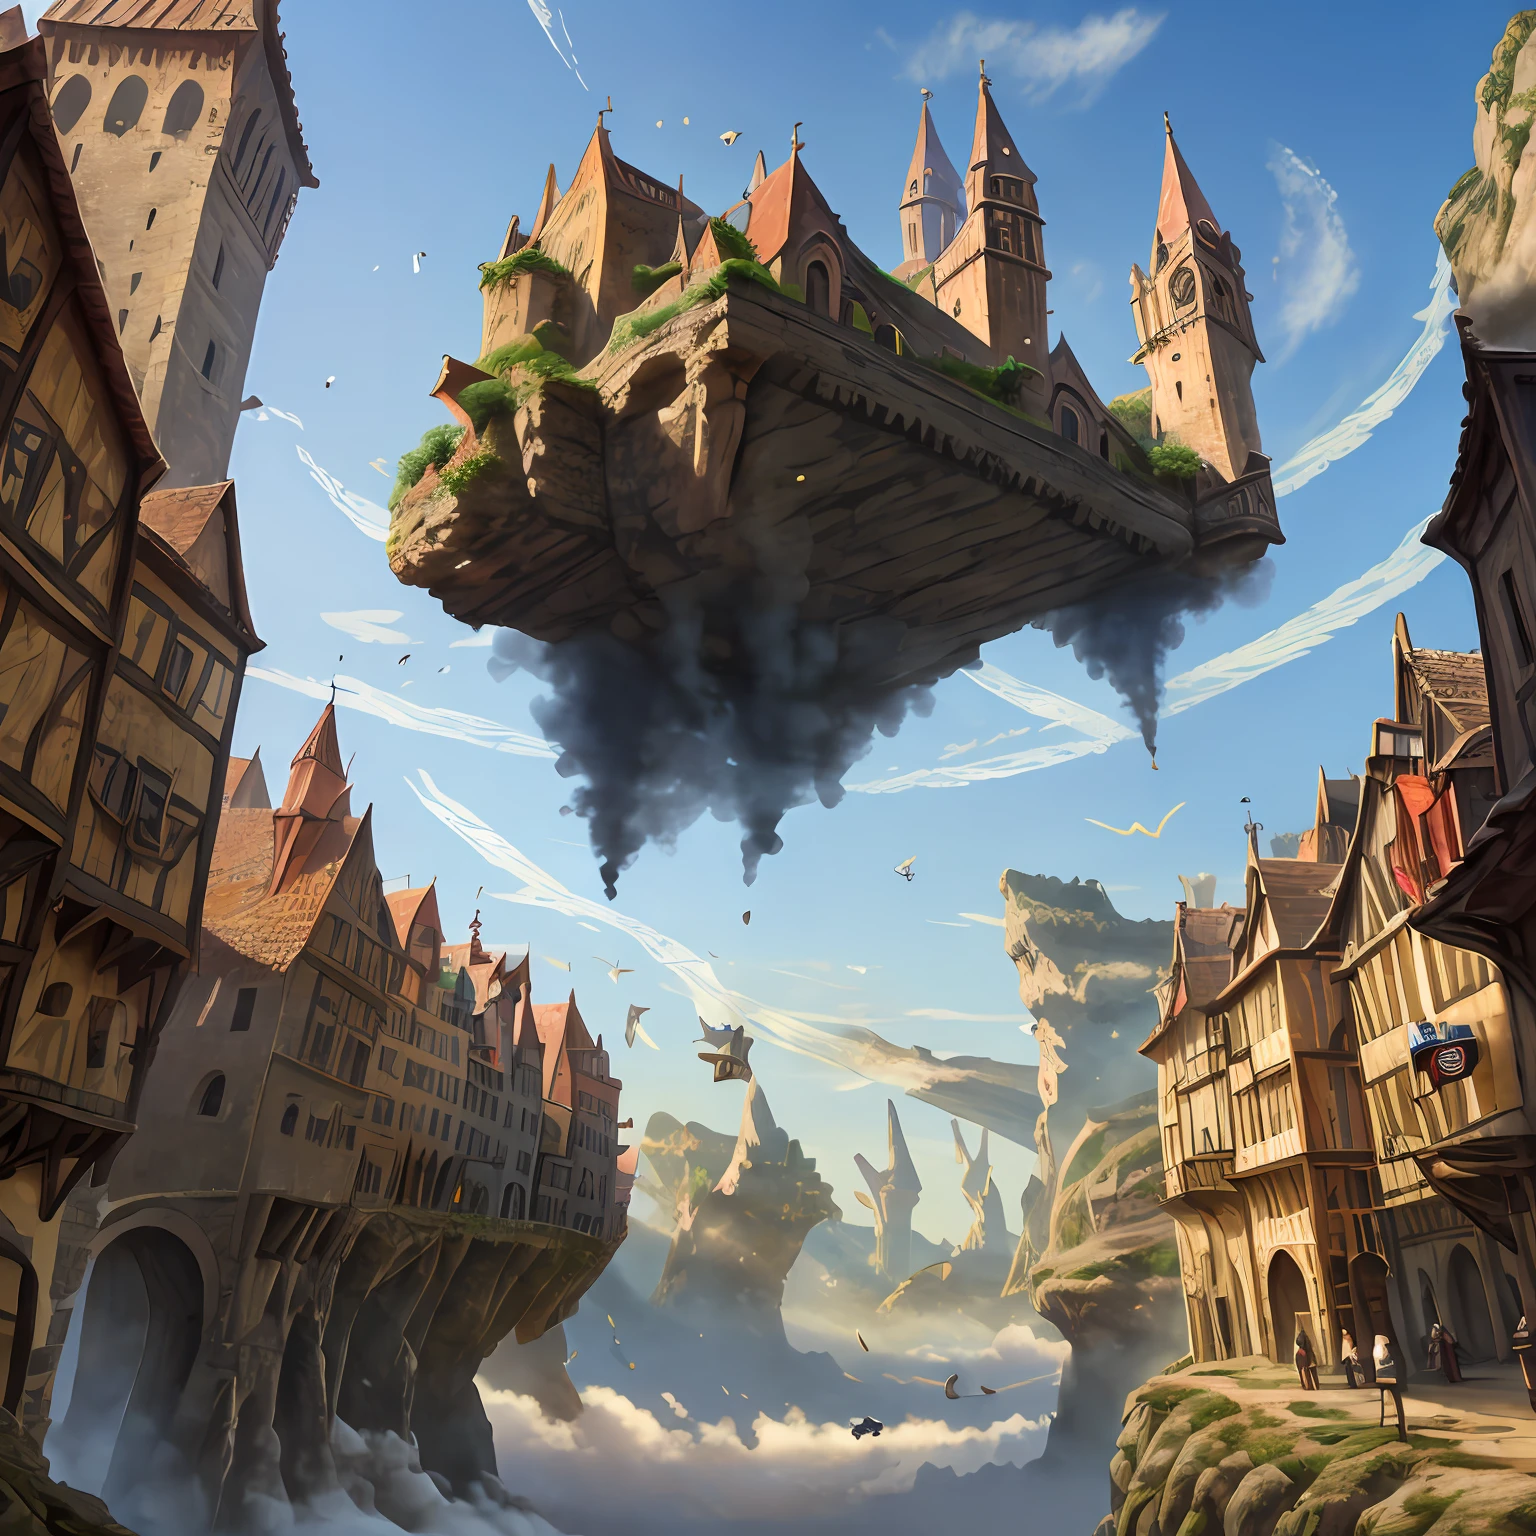 遠處的中世紀城市, 建築物借助魔法懸浮在空中－auto